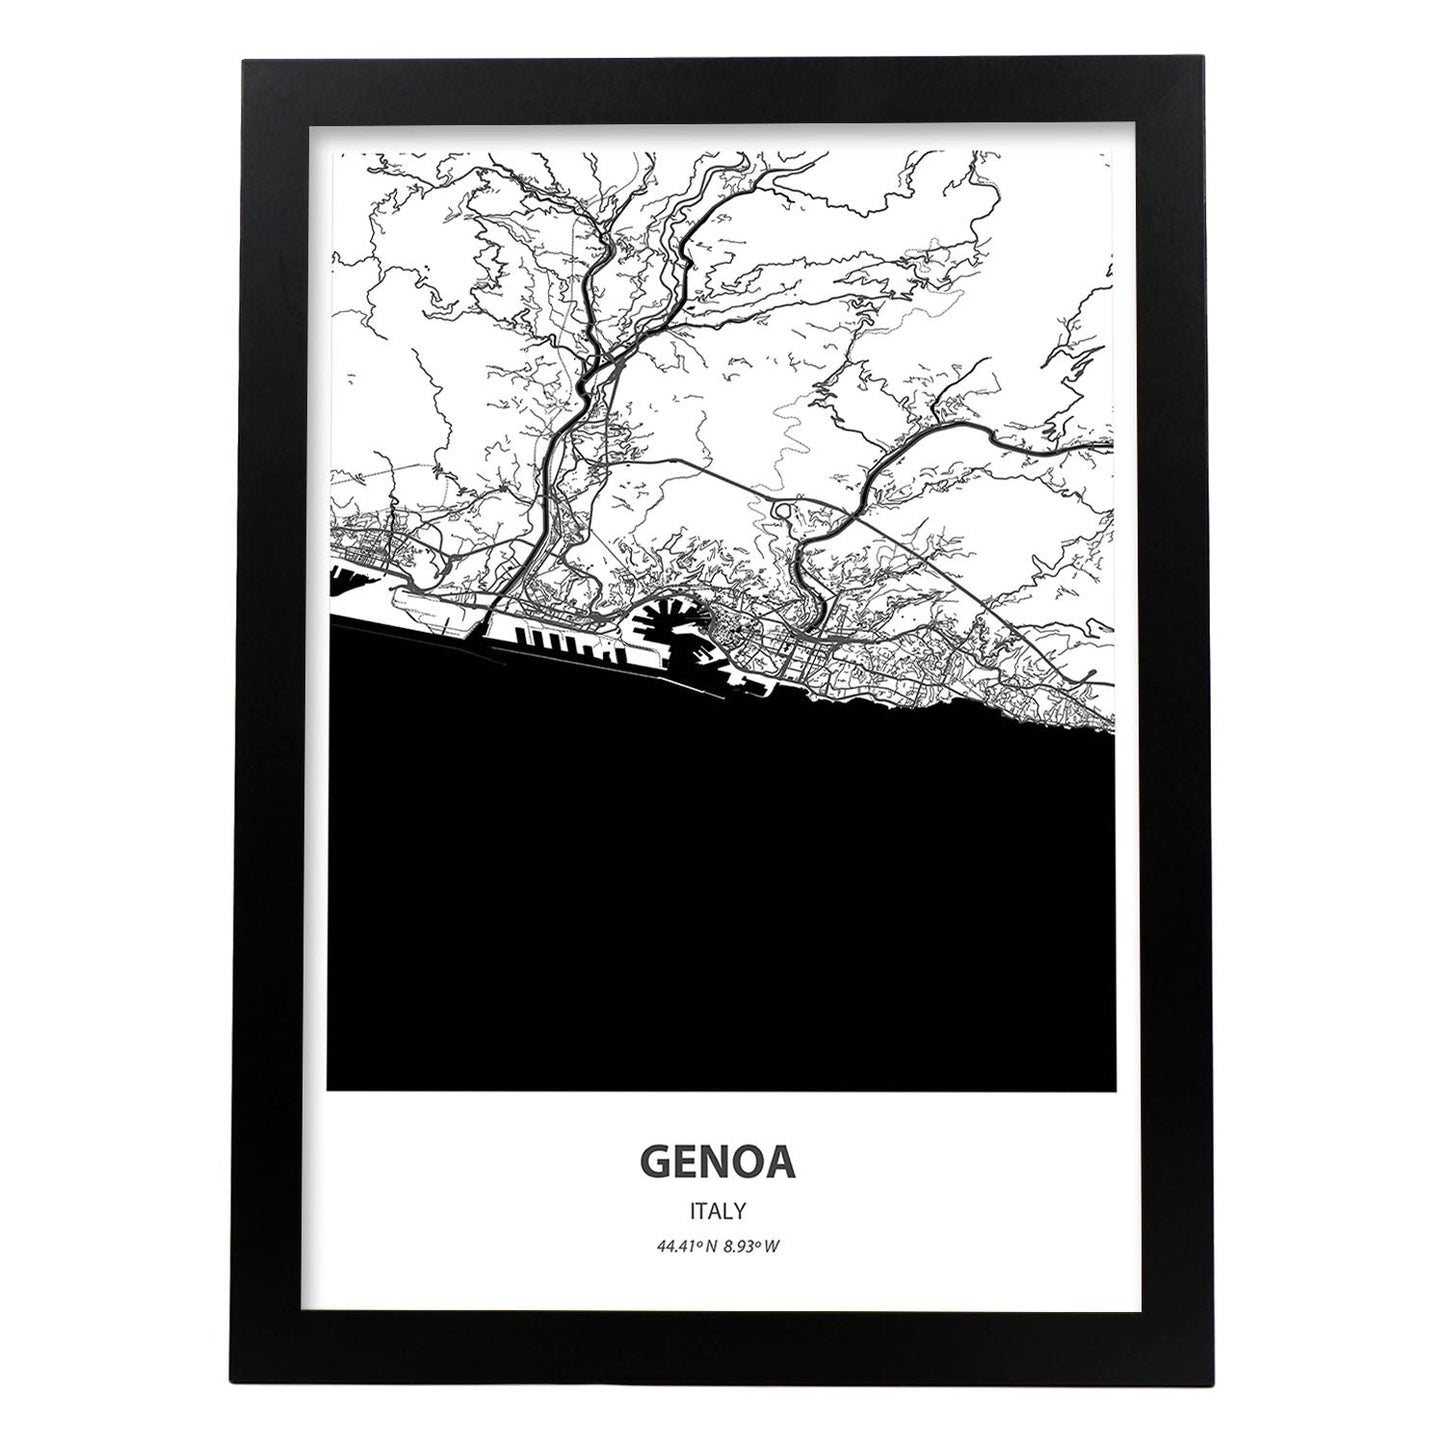 Poster con mapa de Genoa - Italia. Láminas de ciudades de Italia con mares y ríos en color negro.-Artwork-Nacnic-A3-Marco Negro-Nacnic Estudio SL